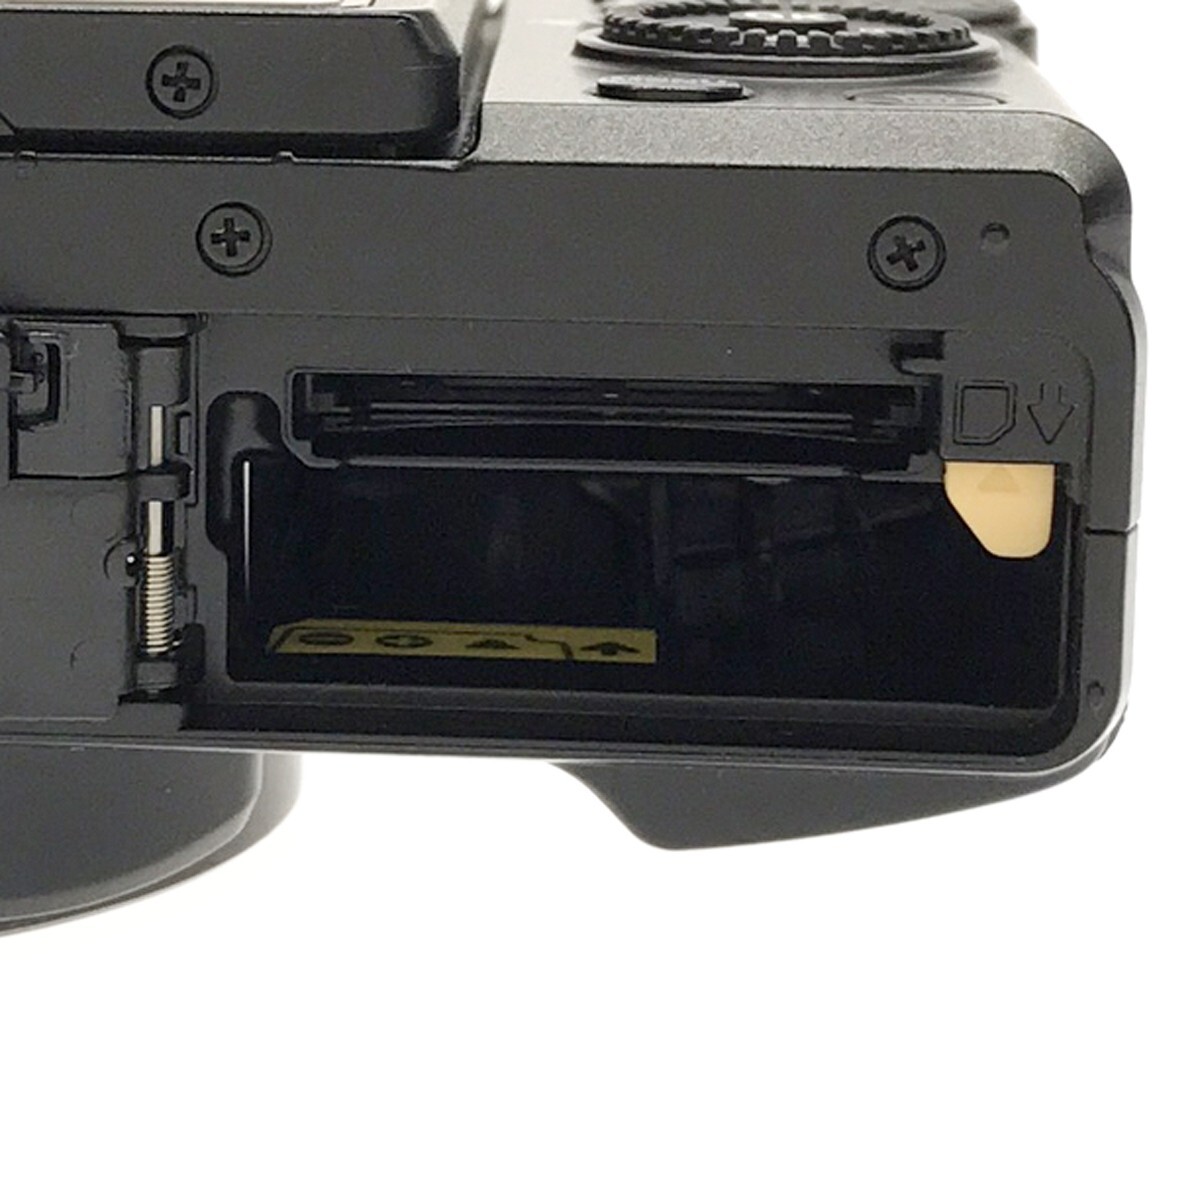 【動作美品】Nikon COOLPIX A900 ブラック チルト式液晶 Wi-Fi対応 光学35倍ズーム 2029万画素 4K動画 バッテリー SDカード8GB付属 C3969_画像8